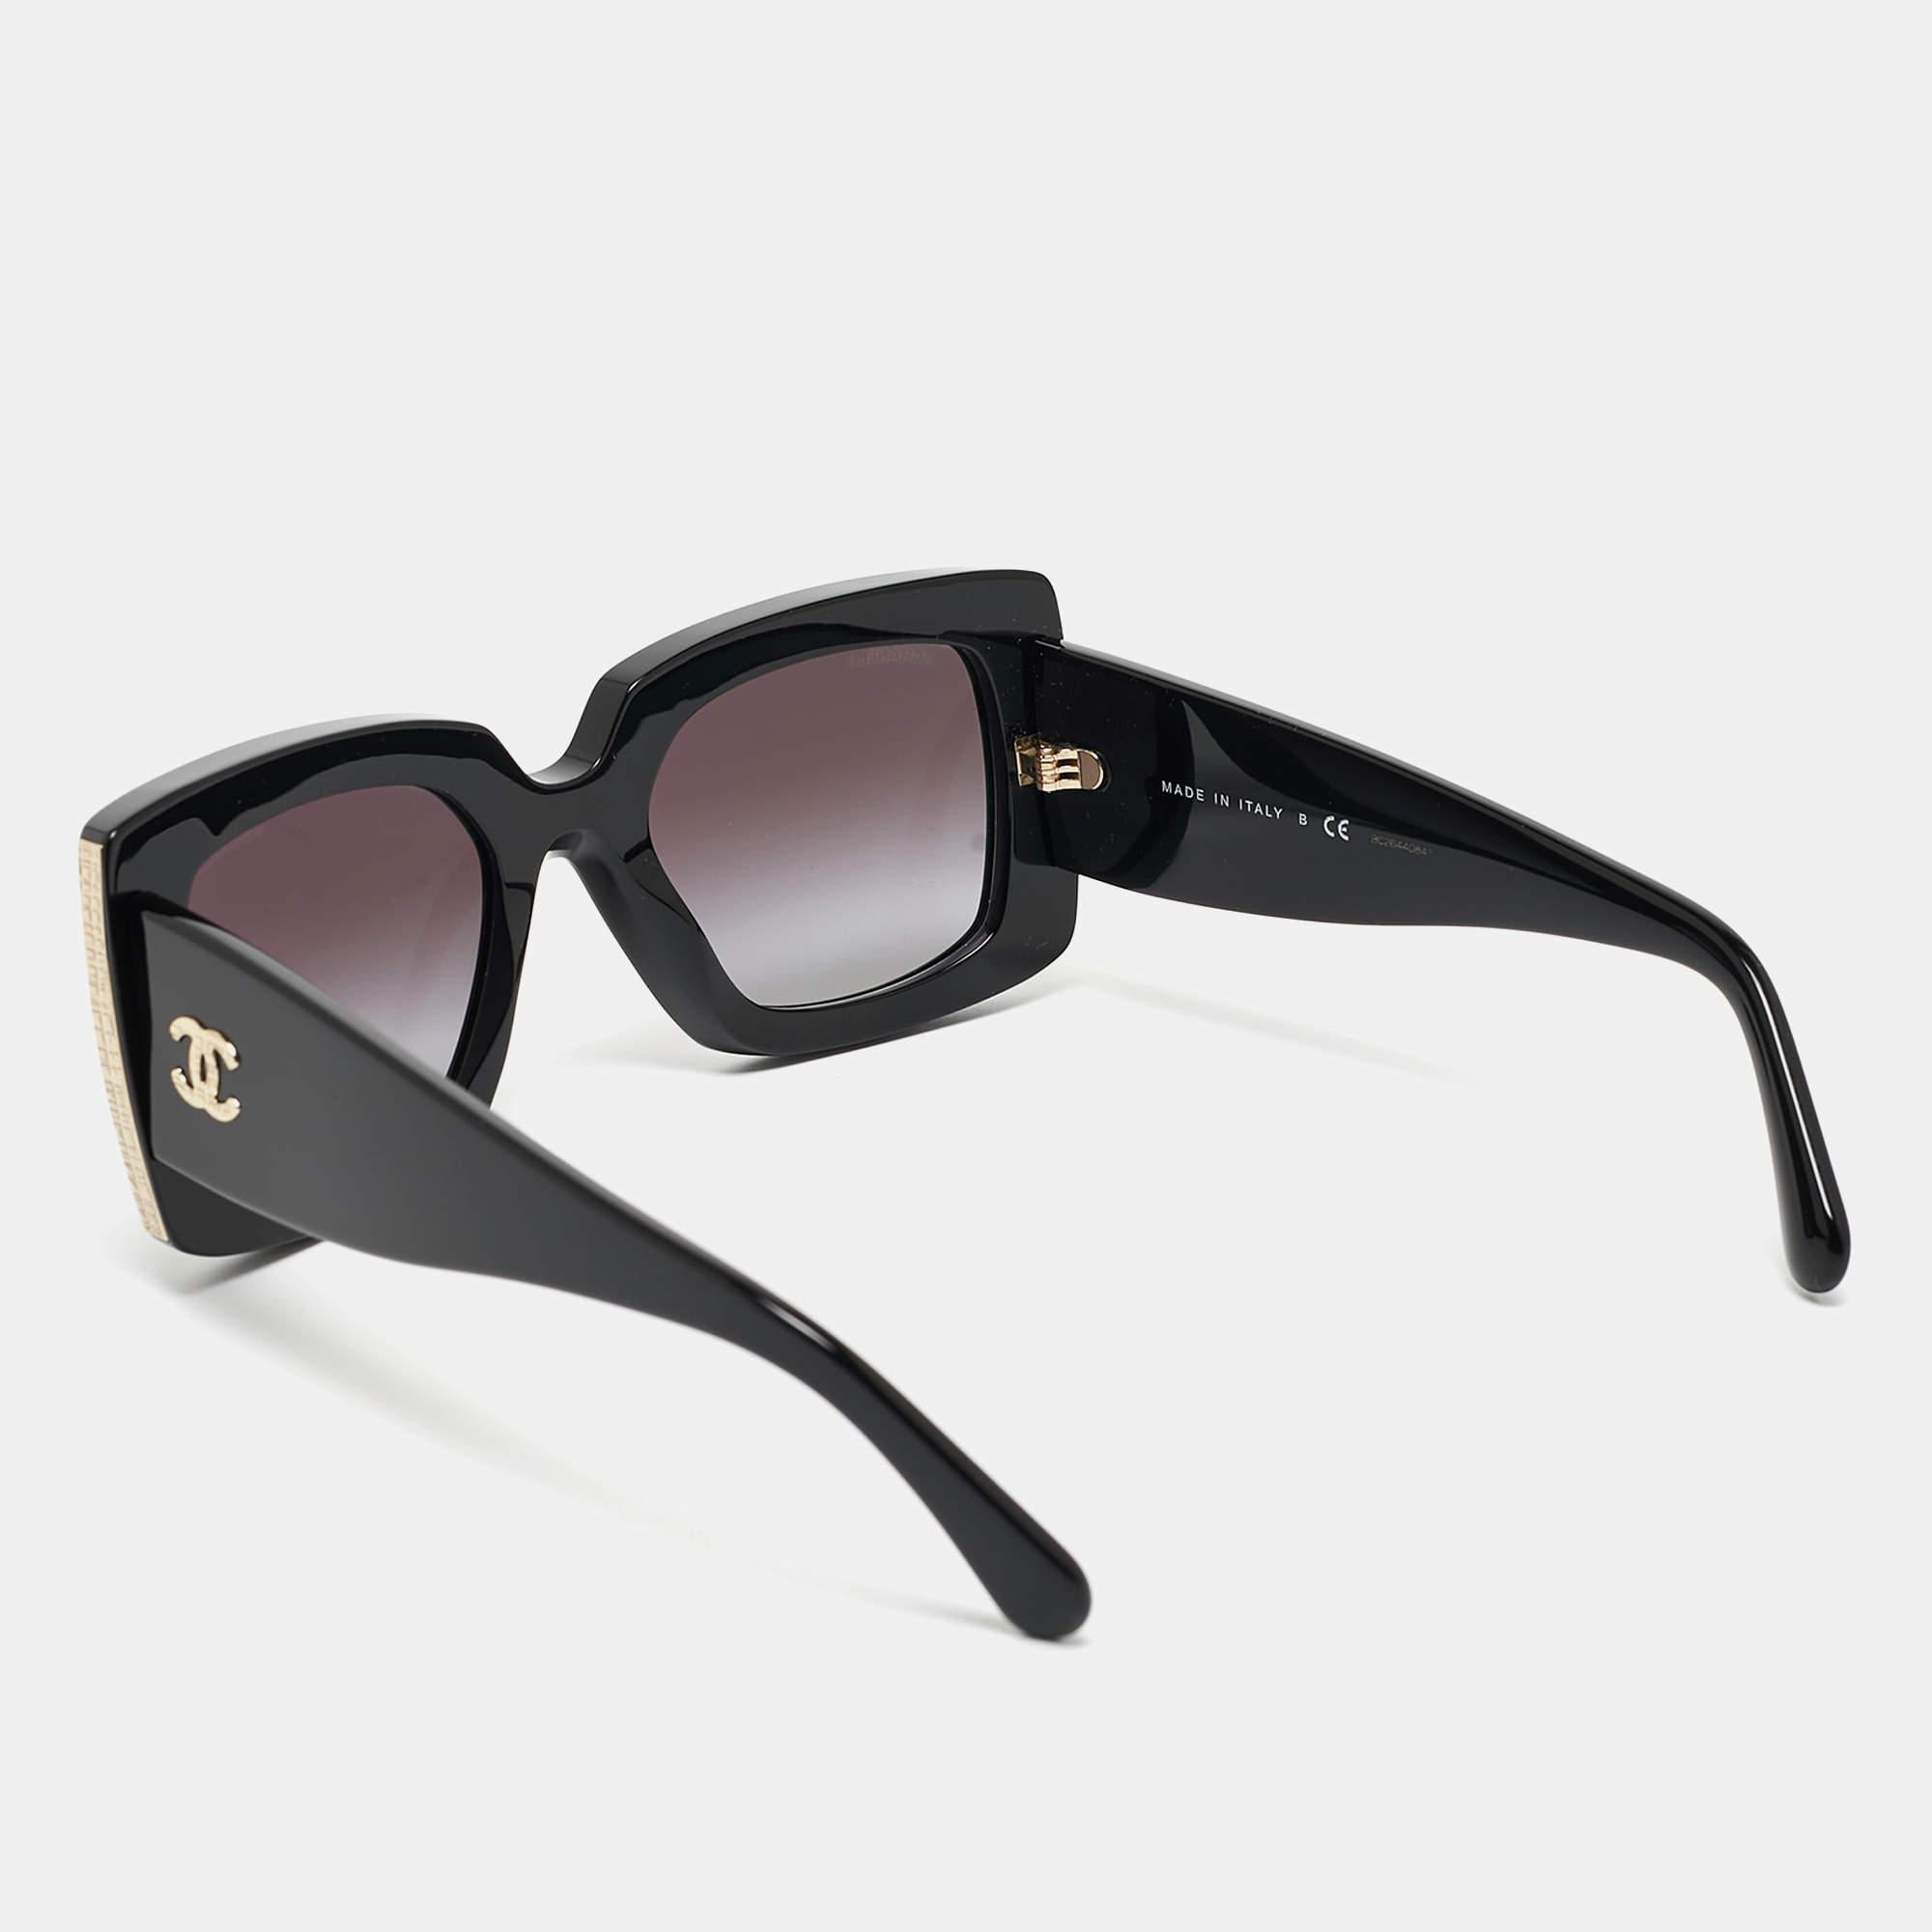 Cette paire de lunettes de soleil Chanel est fabriquée avec expertise pour les femmes qui ont un goût prononcé pour la mode. Parfaites pour les sorties ensoleillées, elles sont dotées d'accessoires en métal doré et de branches marquées.

